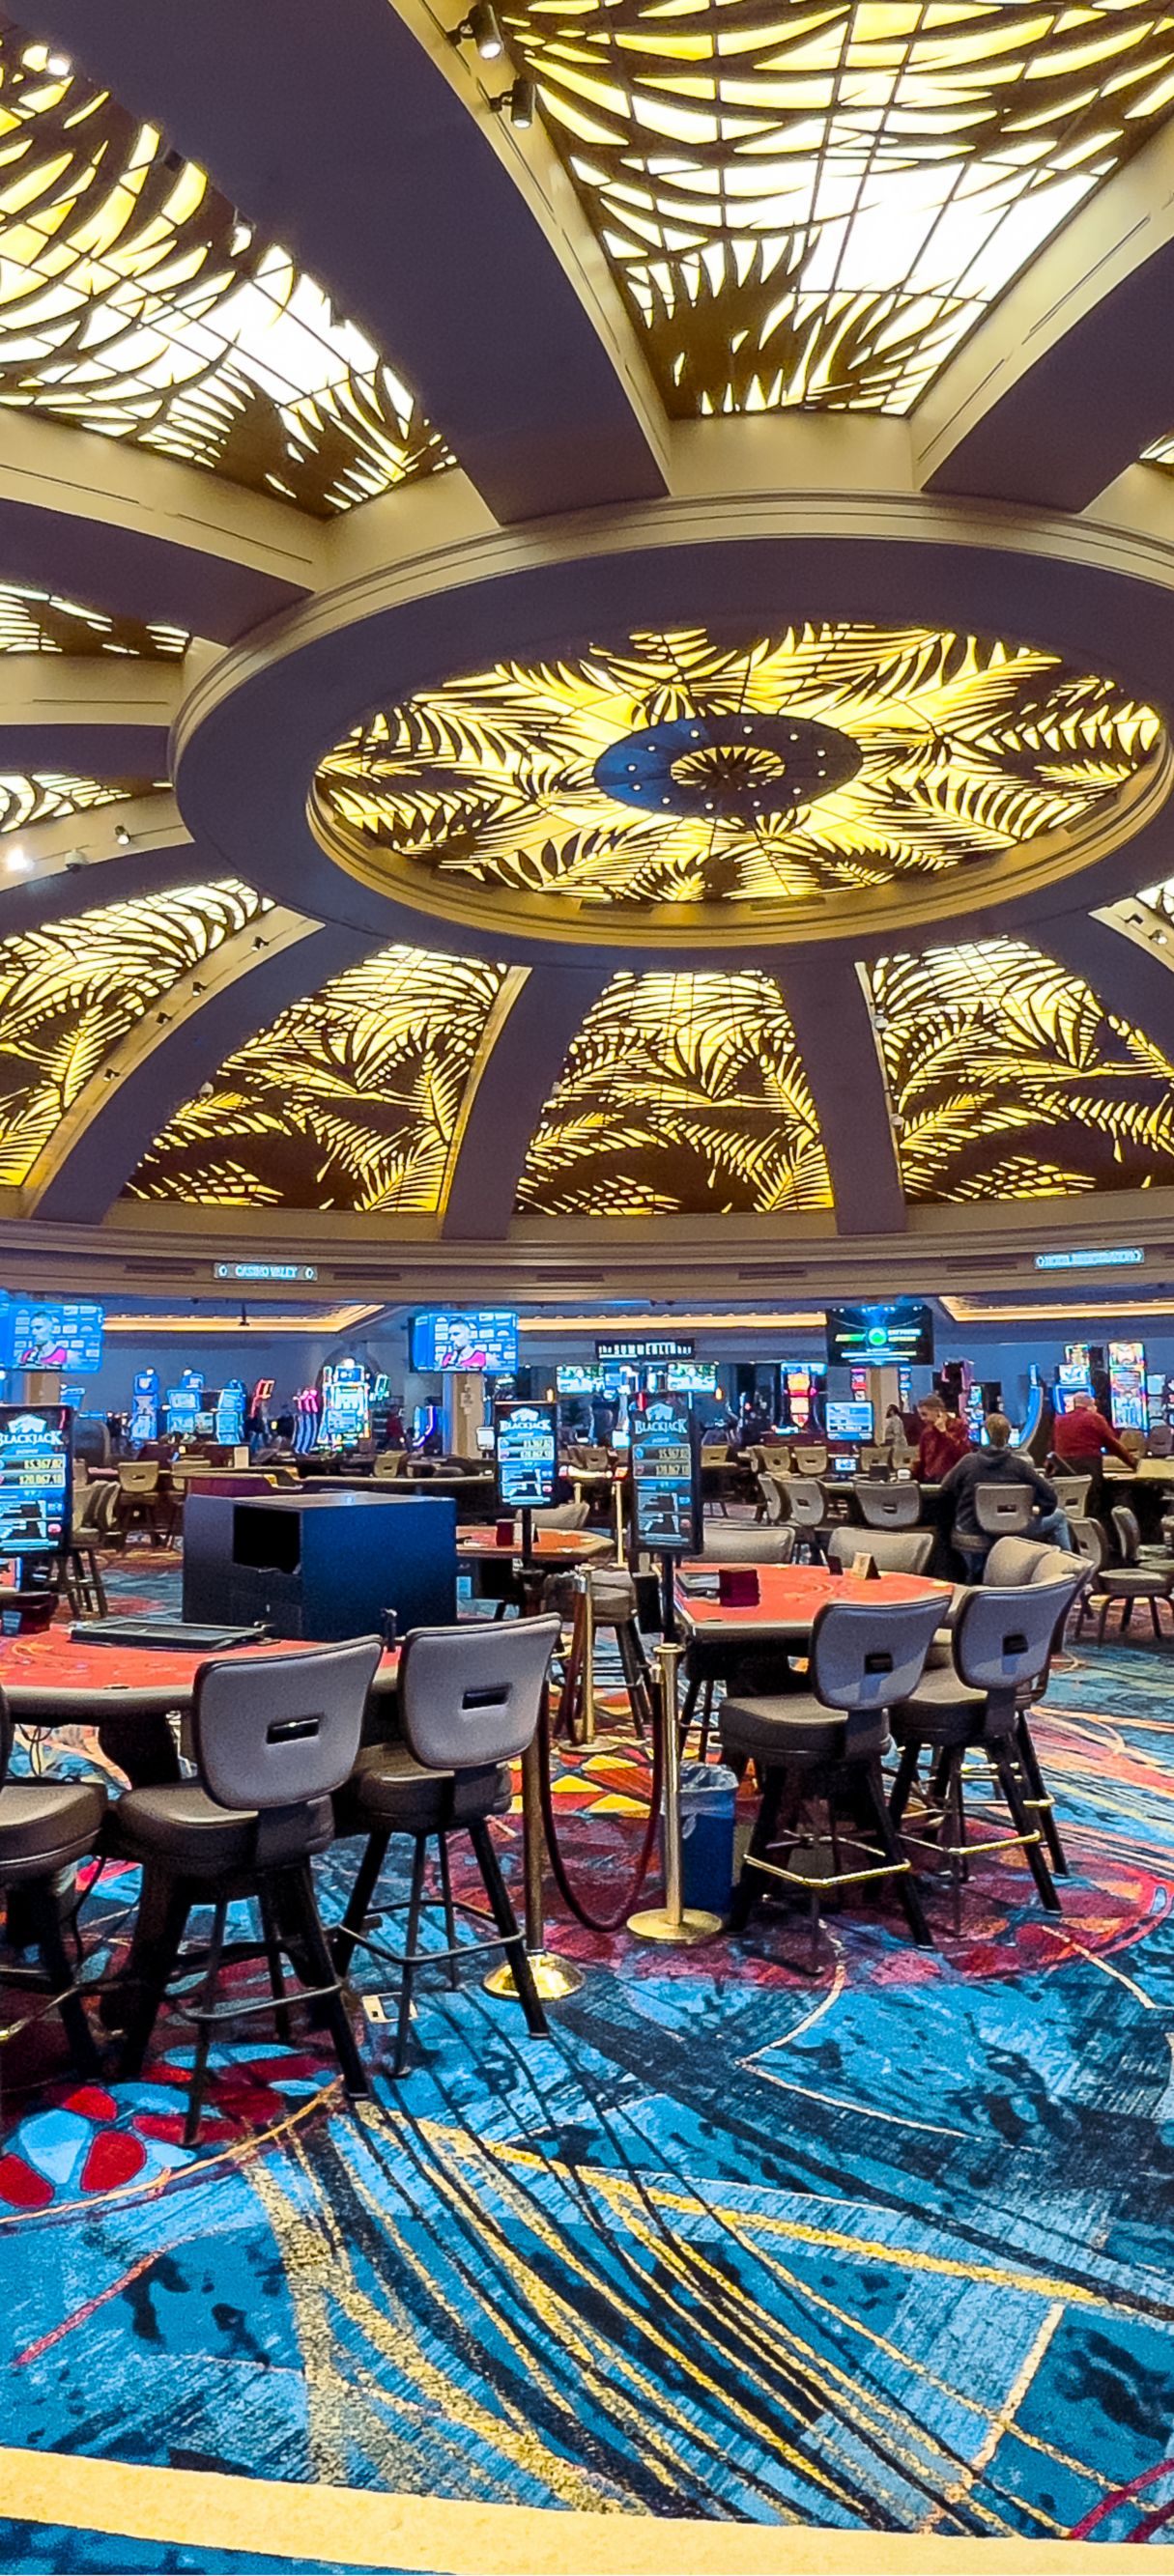 JW Marriott Las Vegas Resort & Spa,Las Vegas:Photos,Reviews,Deals